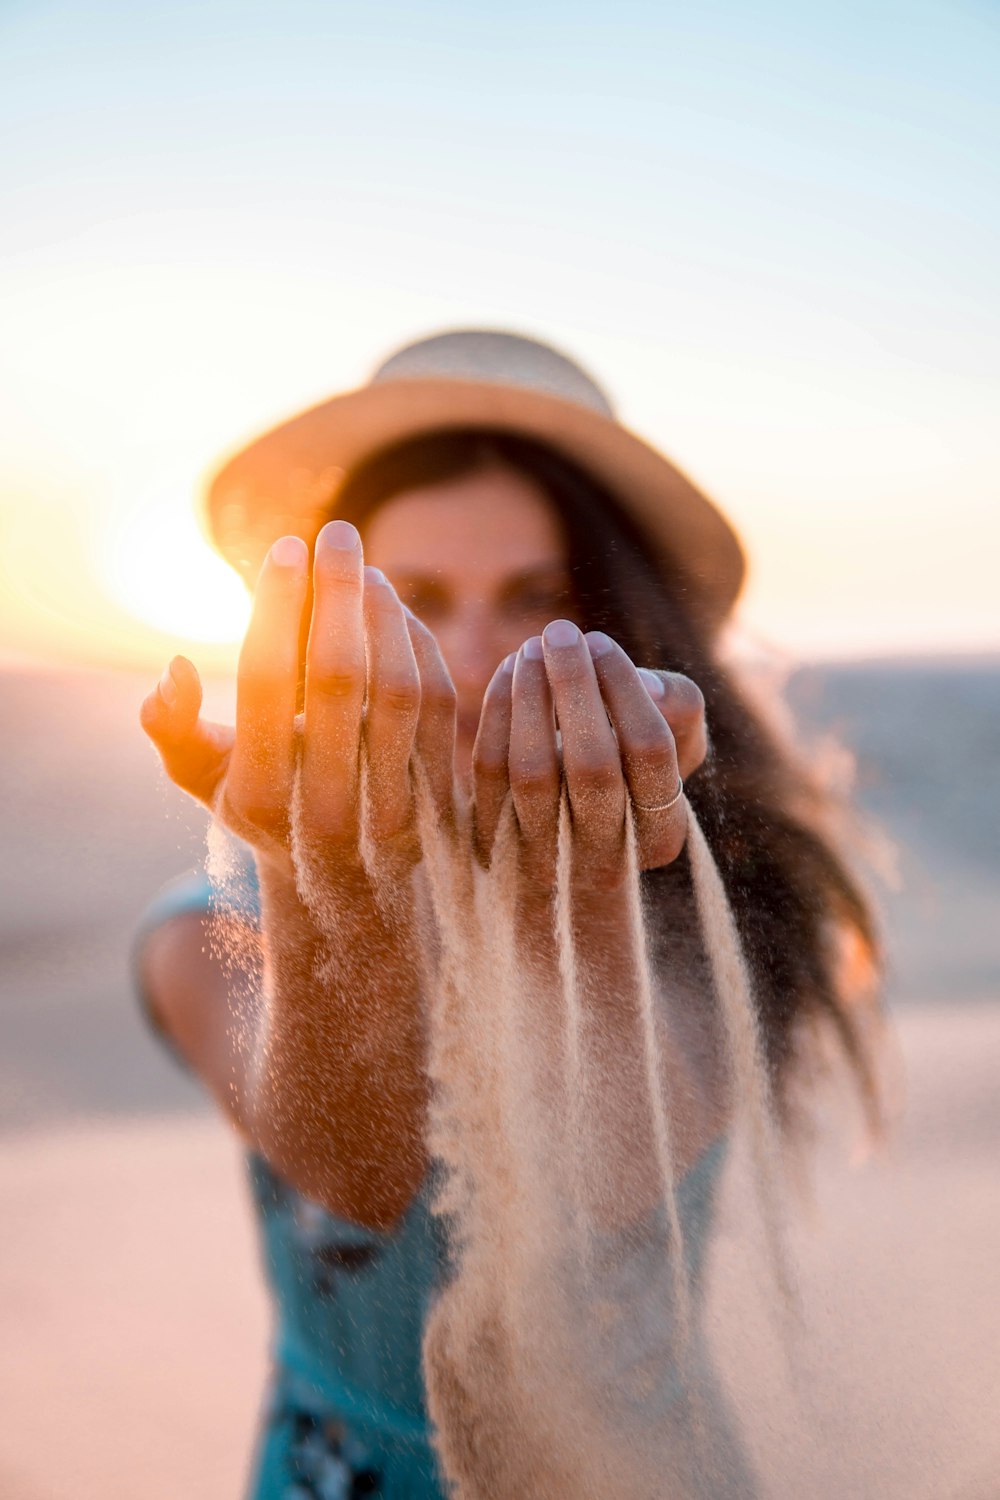 갈색 모래를 들고 있는 여성의 선택적 초점 사진